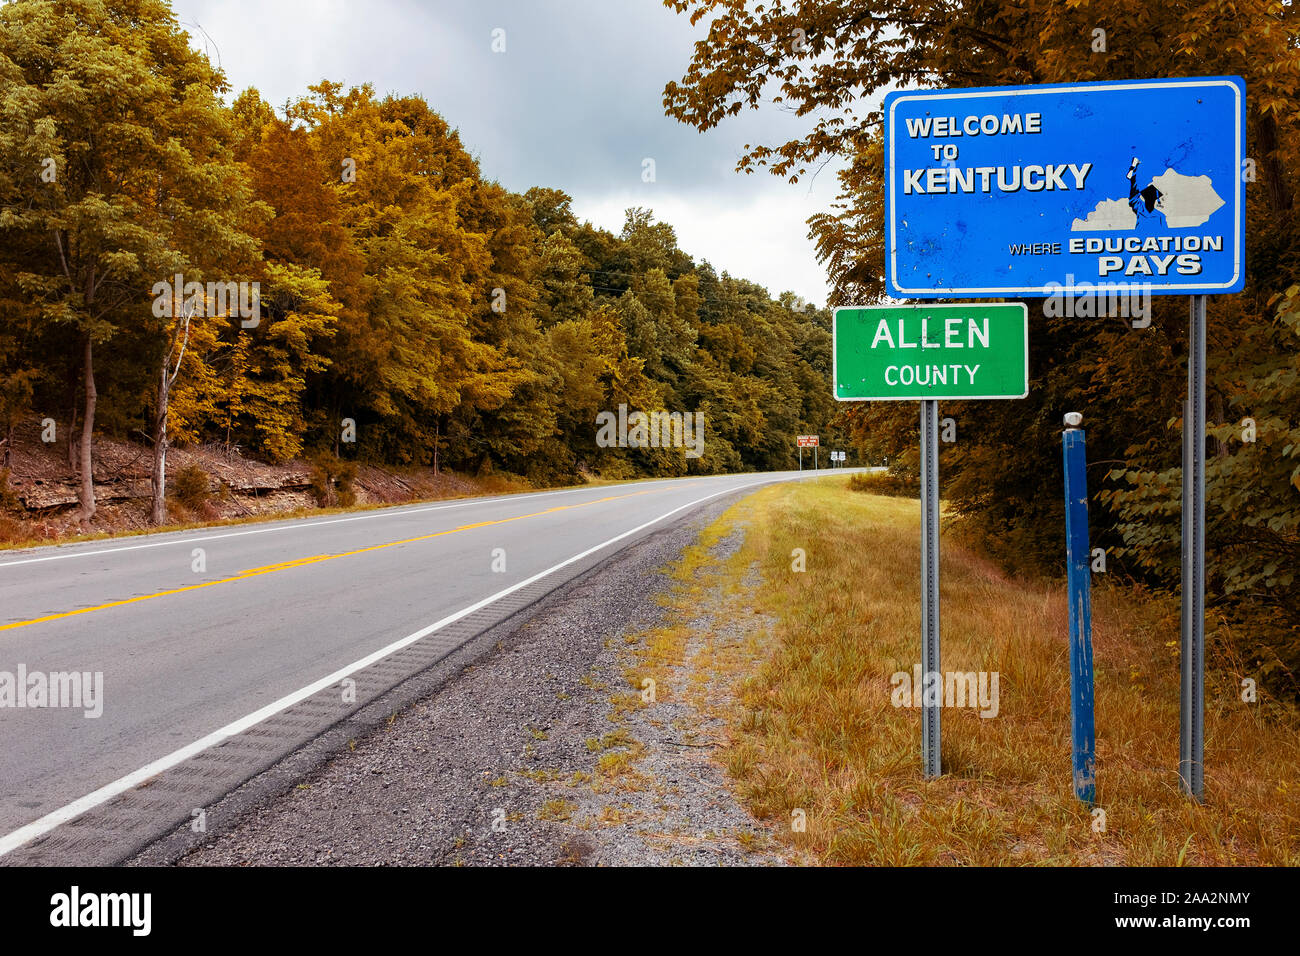 Un signe de bienvenue de l'État du Kentucky le long d'une route à l'entrée de Allen County, aux États-Unis d'Amérique. Banque D'Images